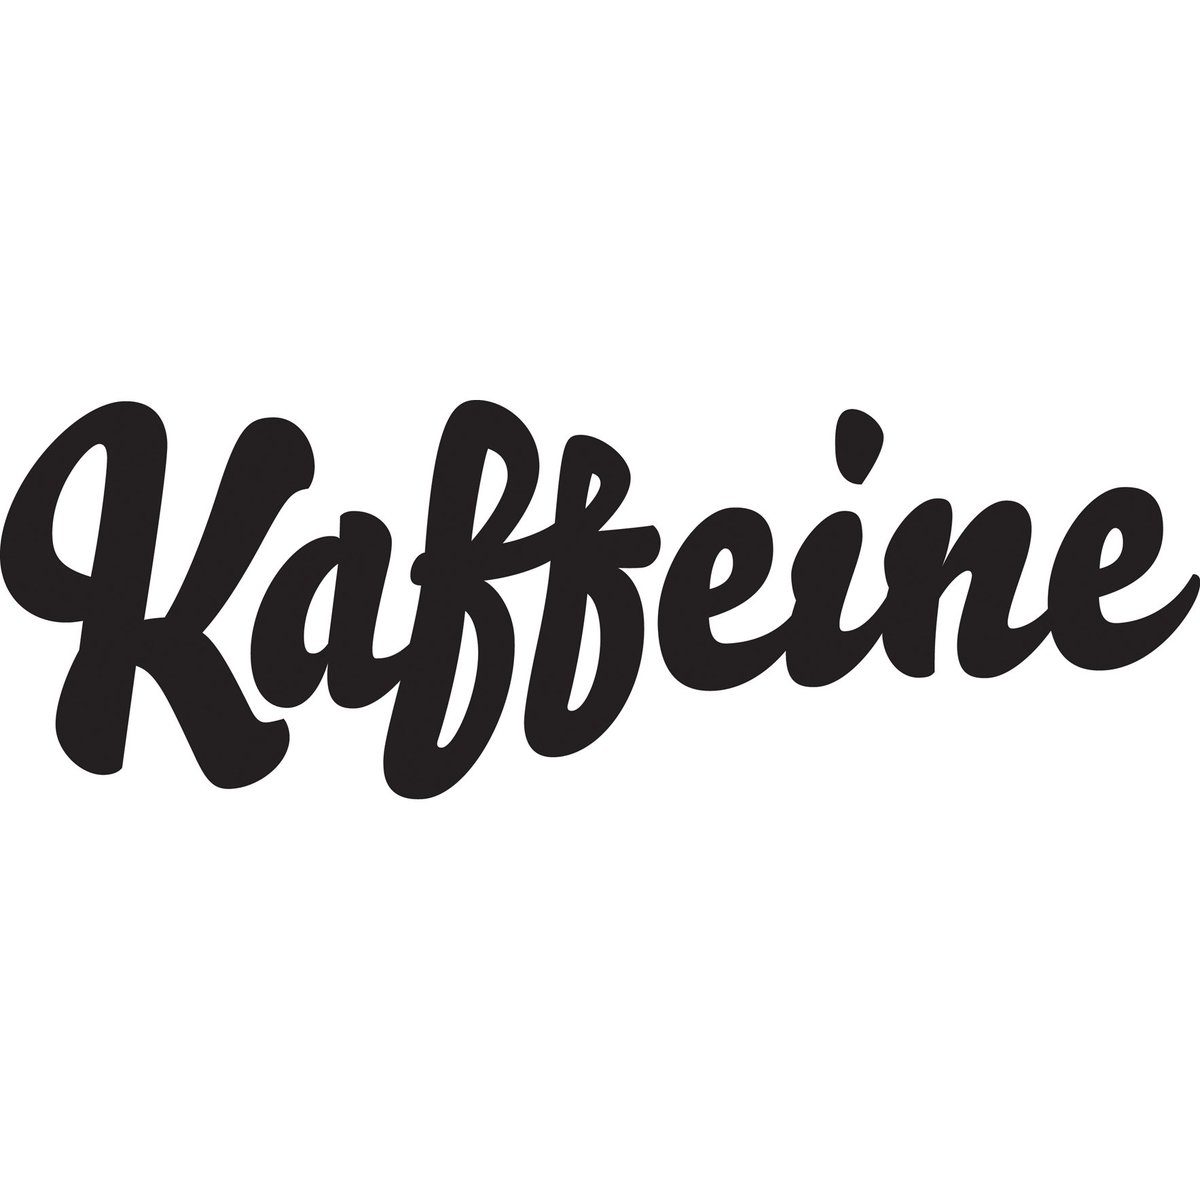 création logo café agence creads